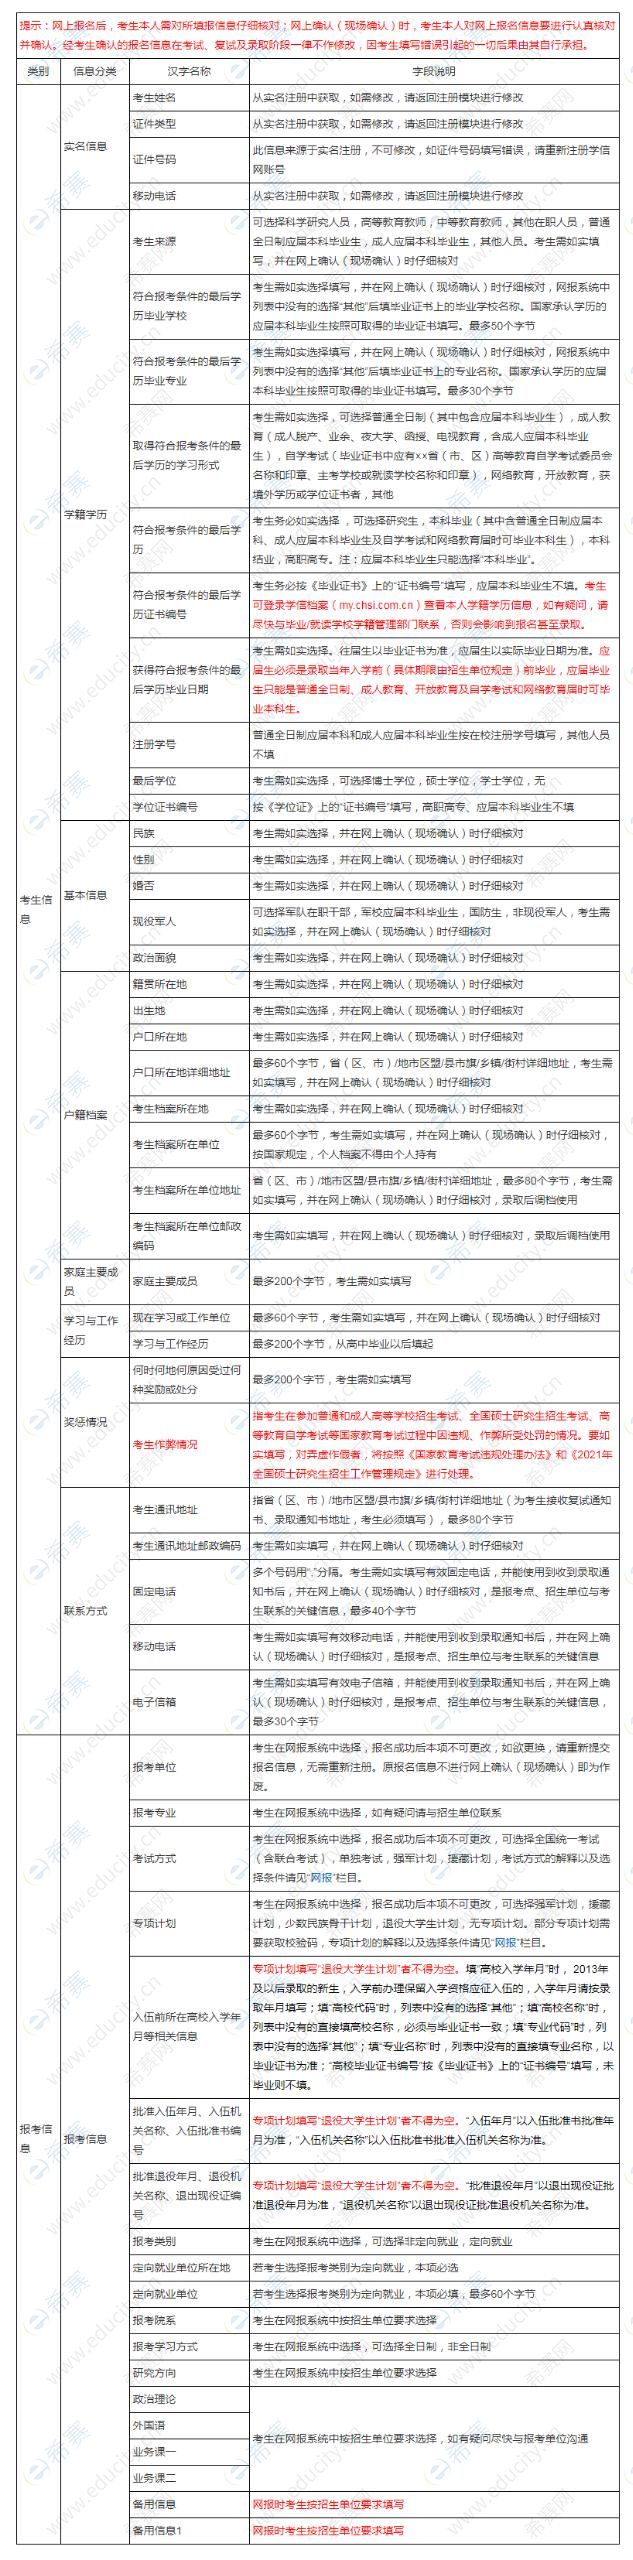 2021年汉语国际教育硕士统考考生需准备的网报信息.jpg